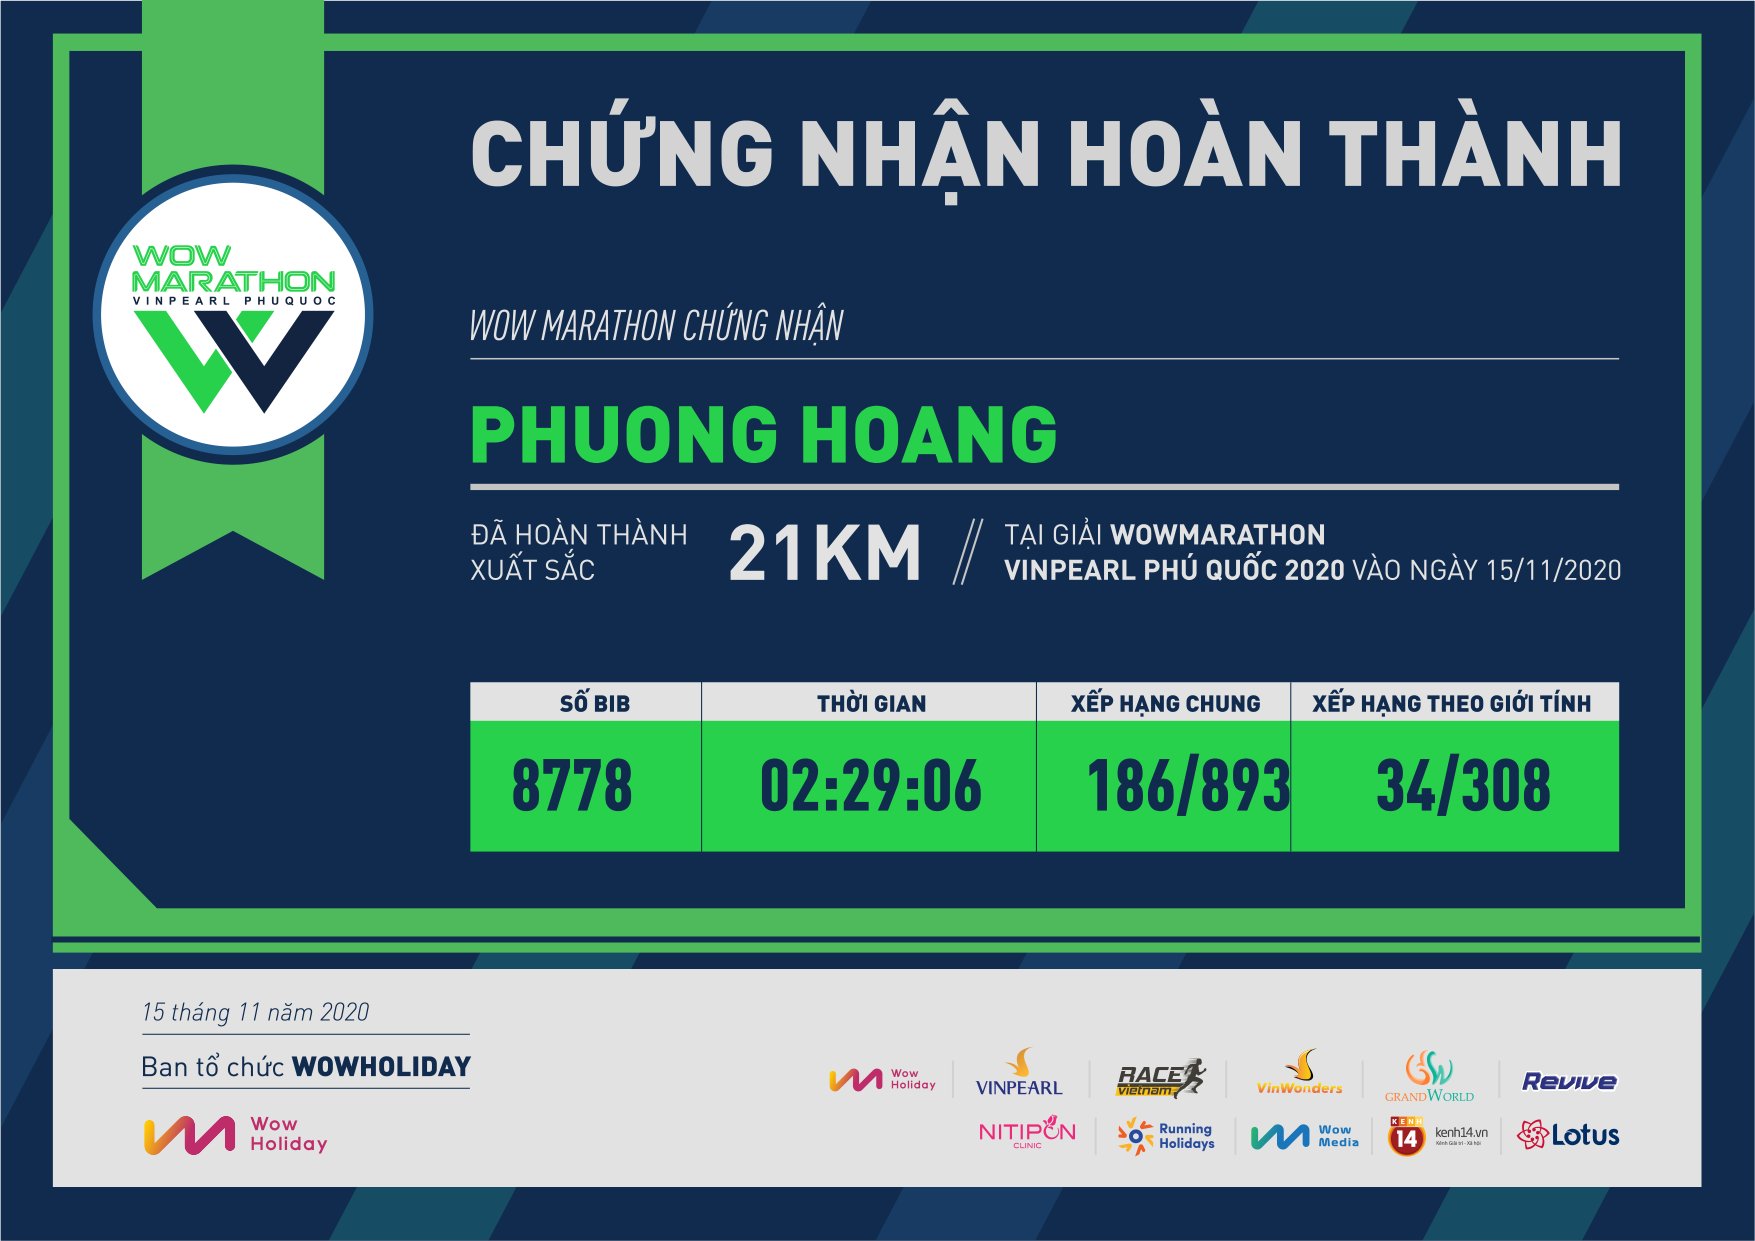 8778 - Phuong Hoang